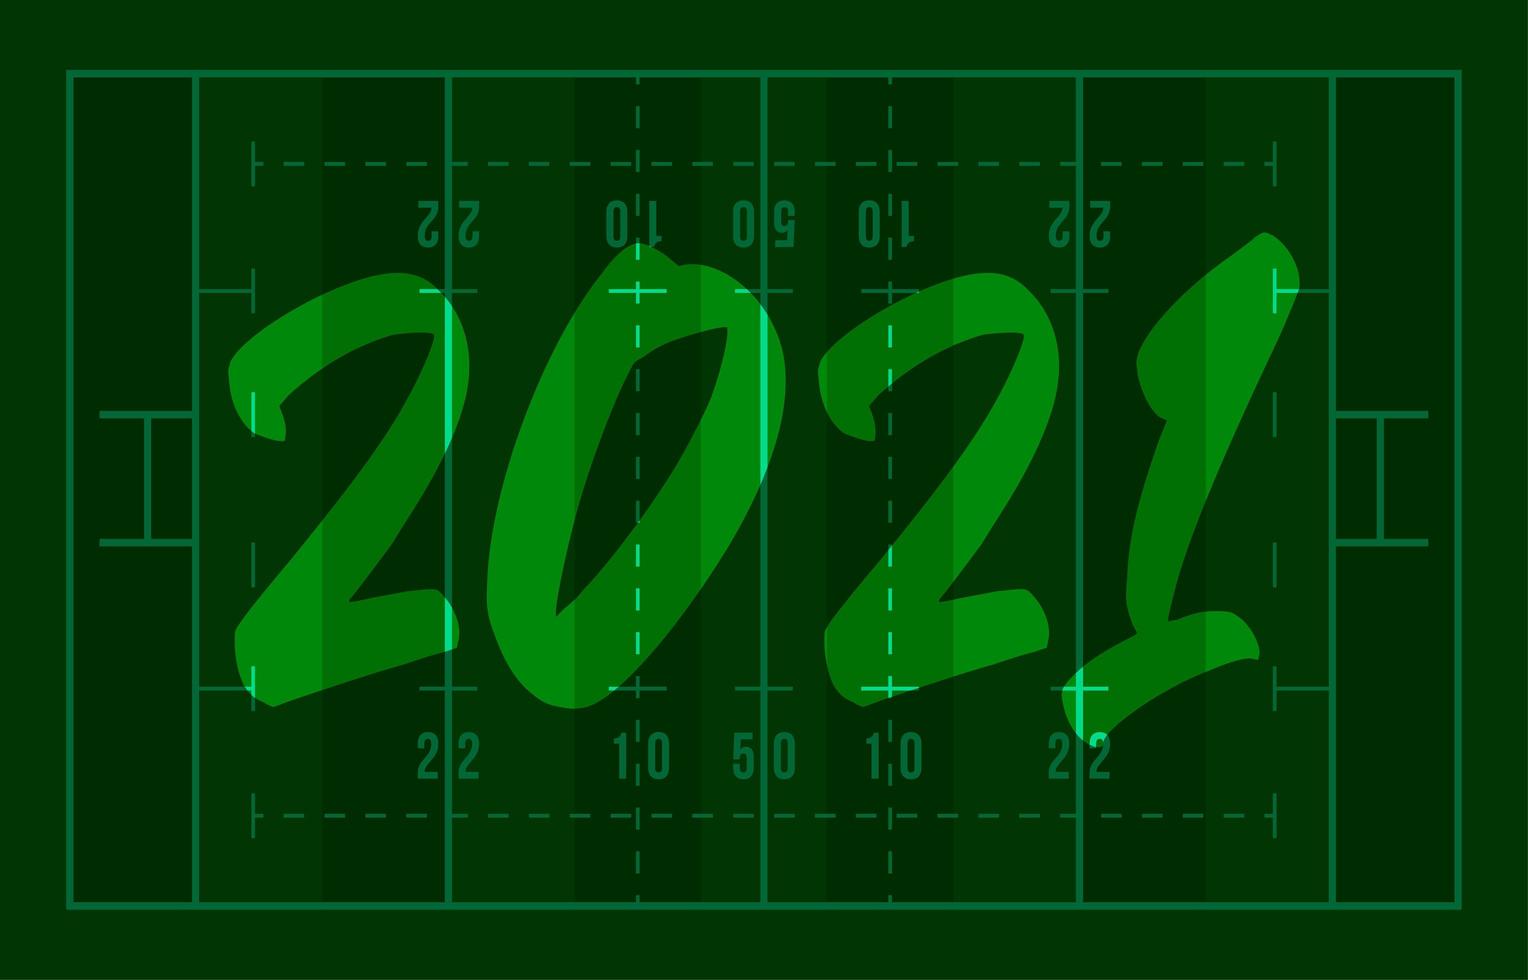 2021 Frohes Neues Jahr American Football Feld Grußkarte mit Schriftzug. kreativer Rugbyfeldhintergrund für Weihnachten und Neujahrsfeier. Sportgrußkarte vektor